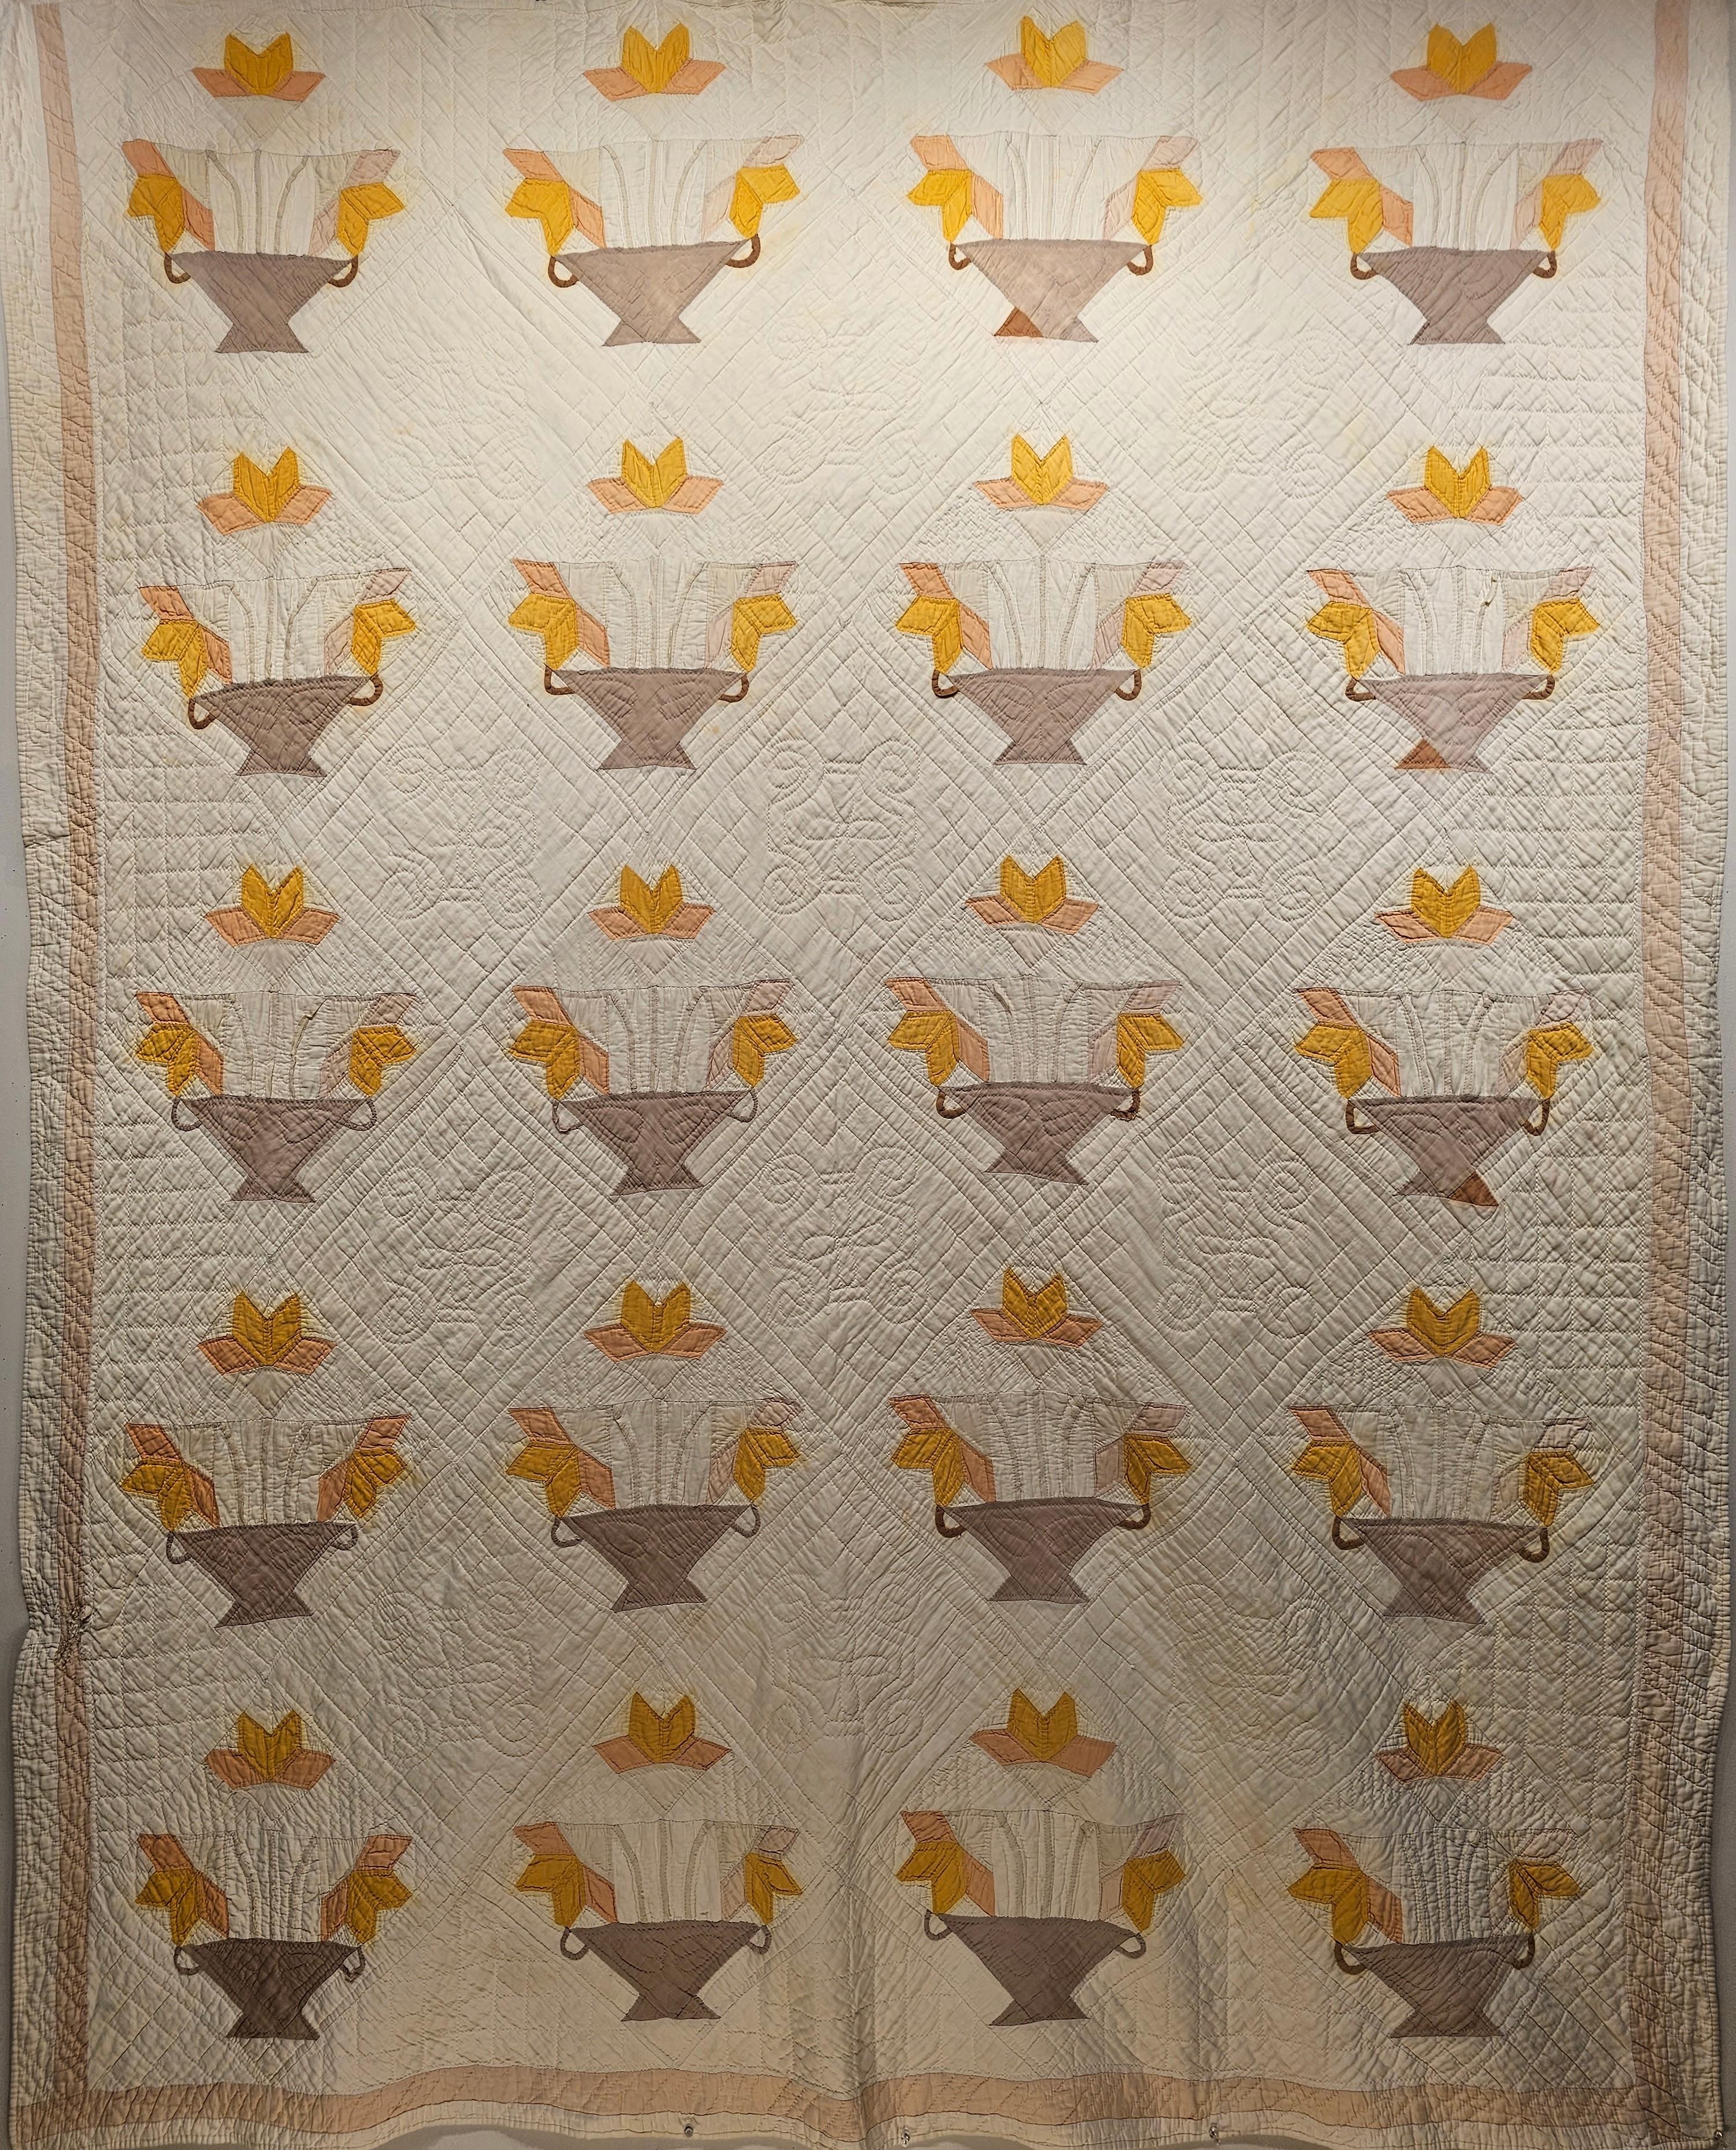 Dieser schöne amerikanische Applique-Quilt wurde Anfang des 20. Jahrhunderts von Hand genäht. Der amerikanische Applique-Quilt ist in einem 